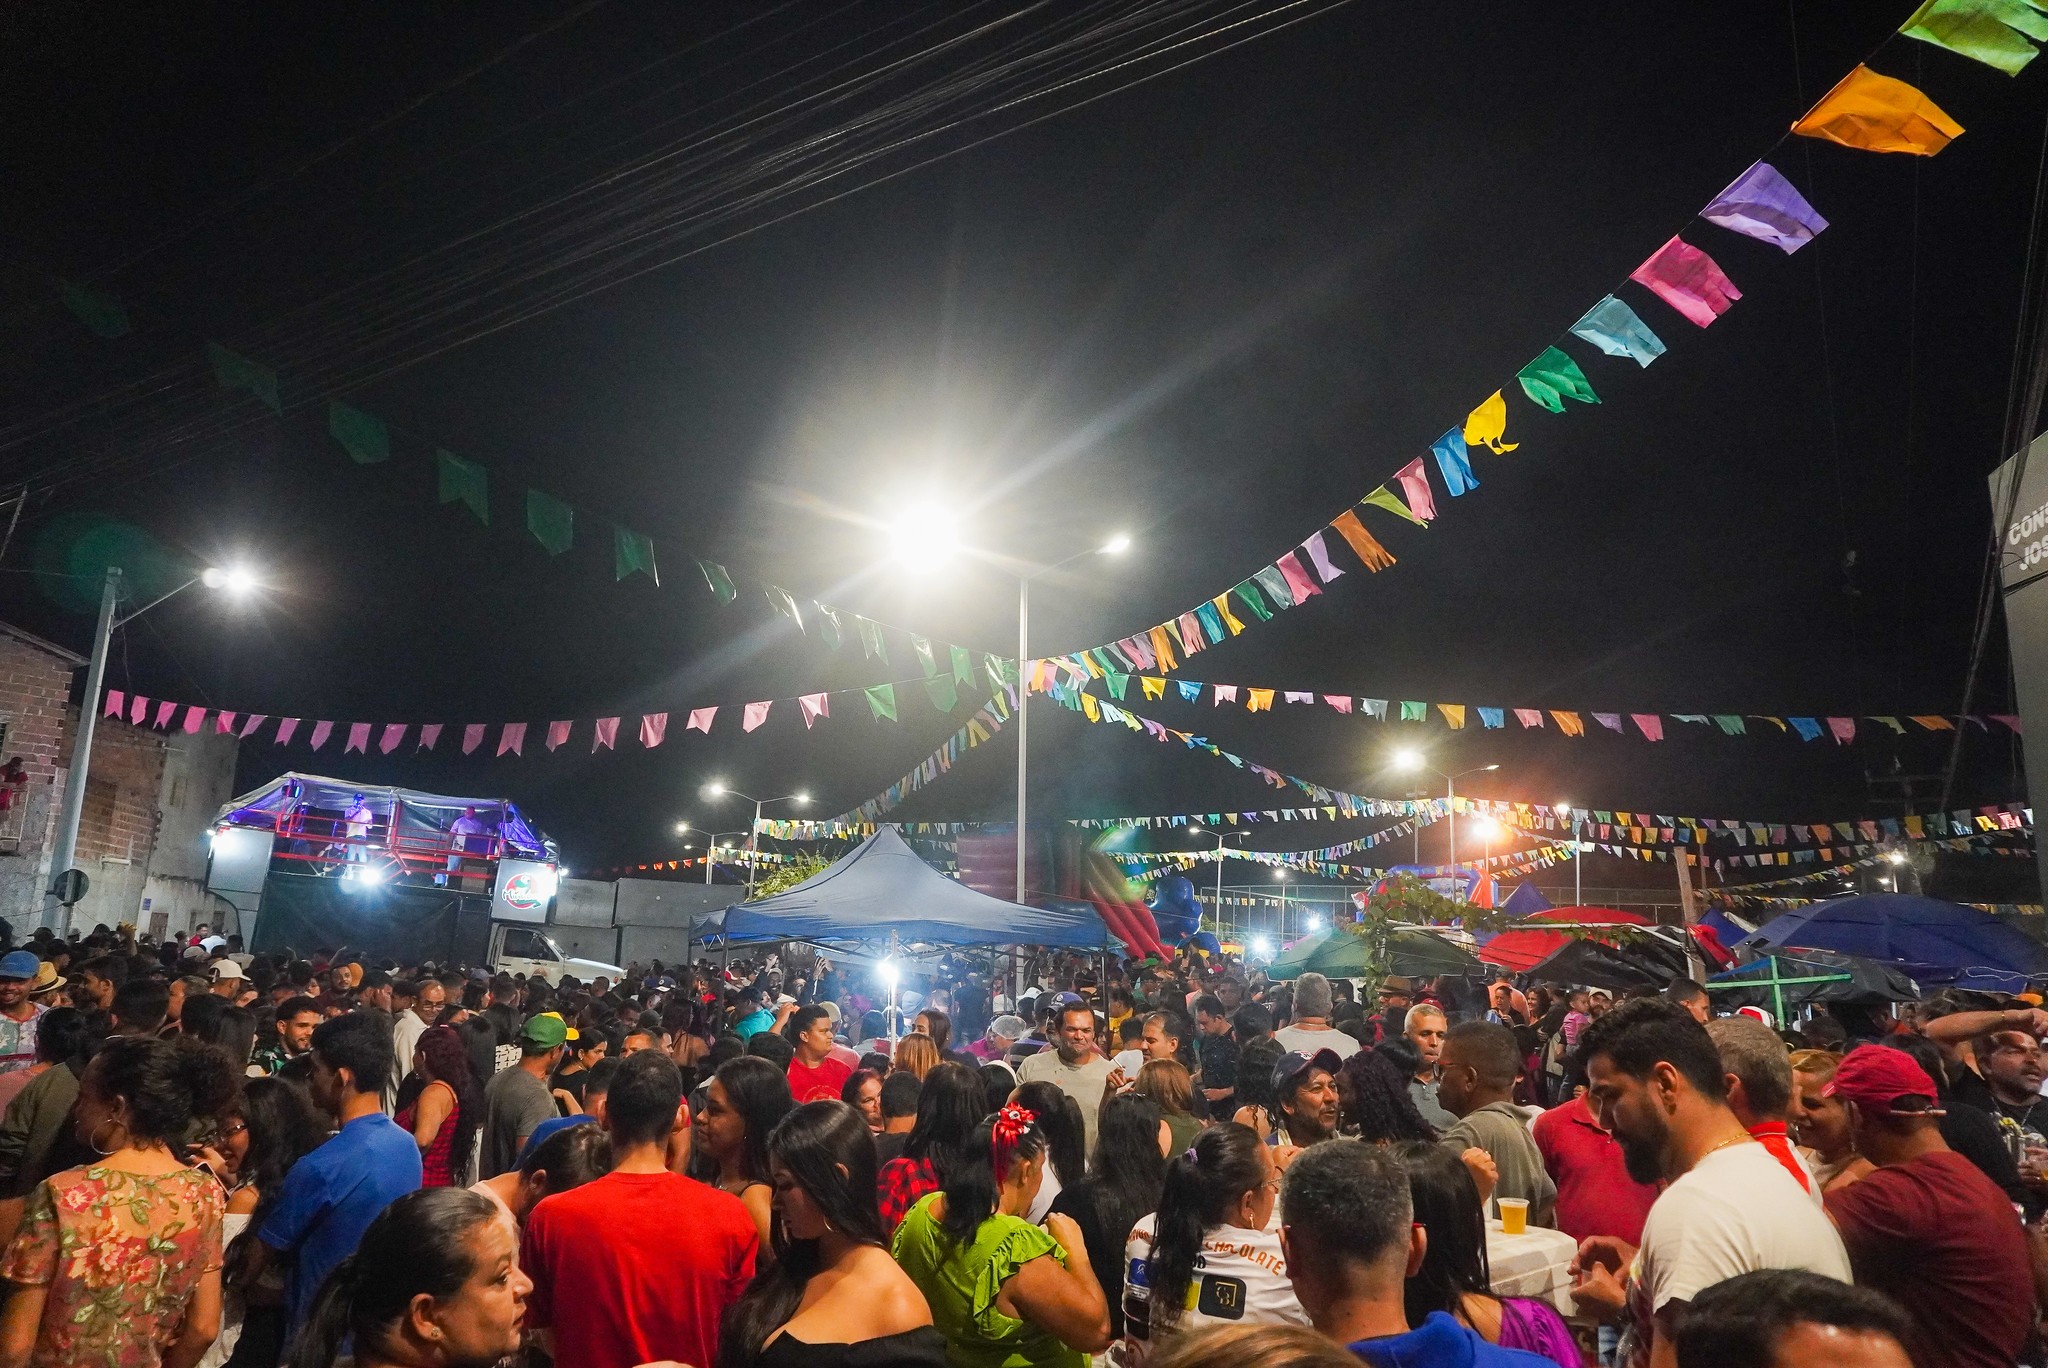 Festas das comidas gigantes são realizadas em diversos locais de Caruaru; confira o calendário